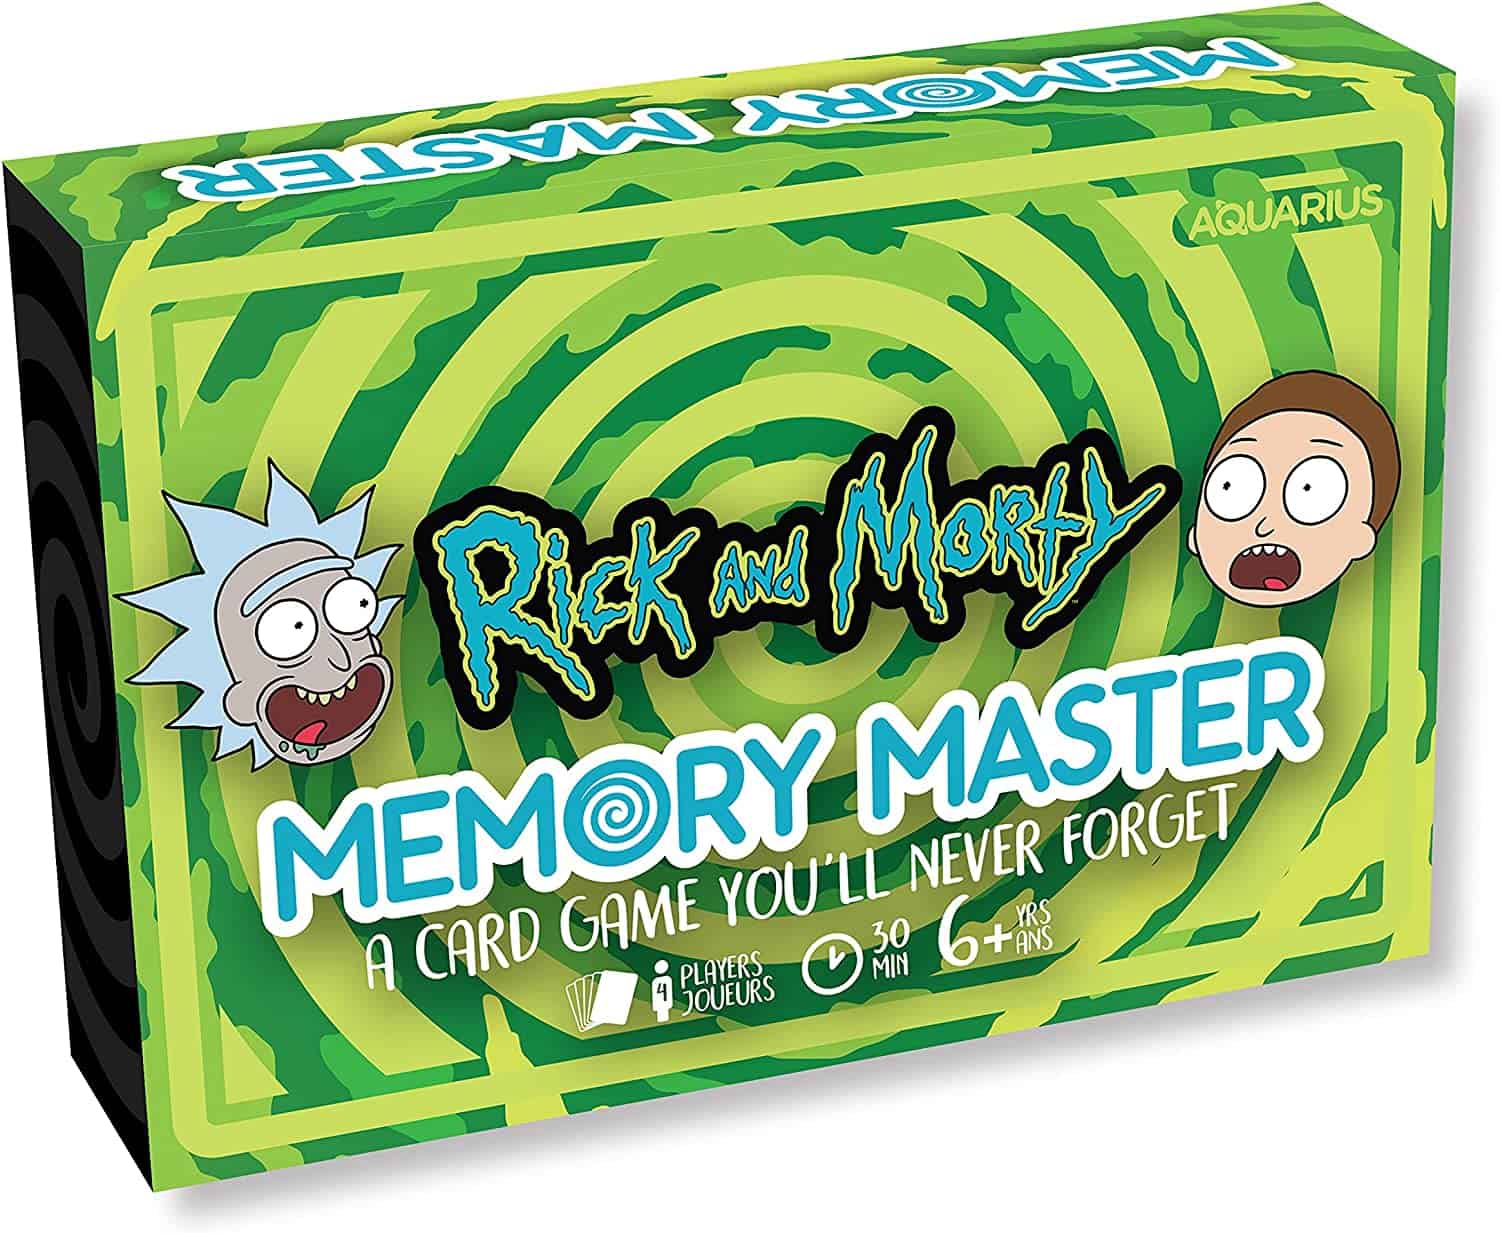 Rick and Morty Memory Master